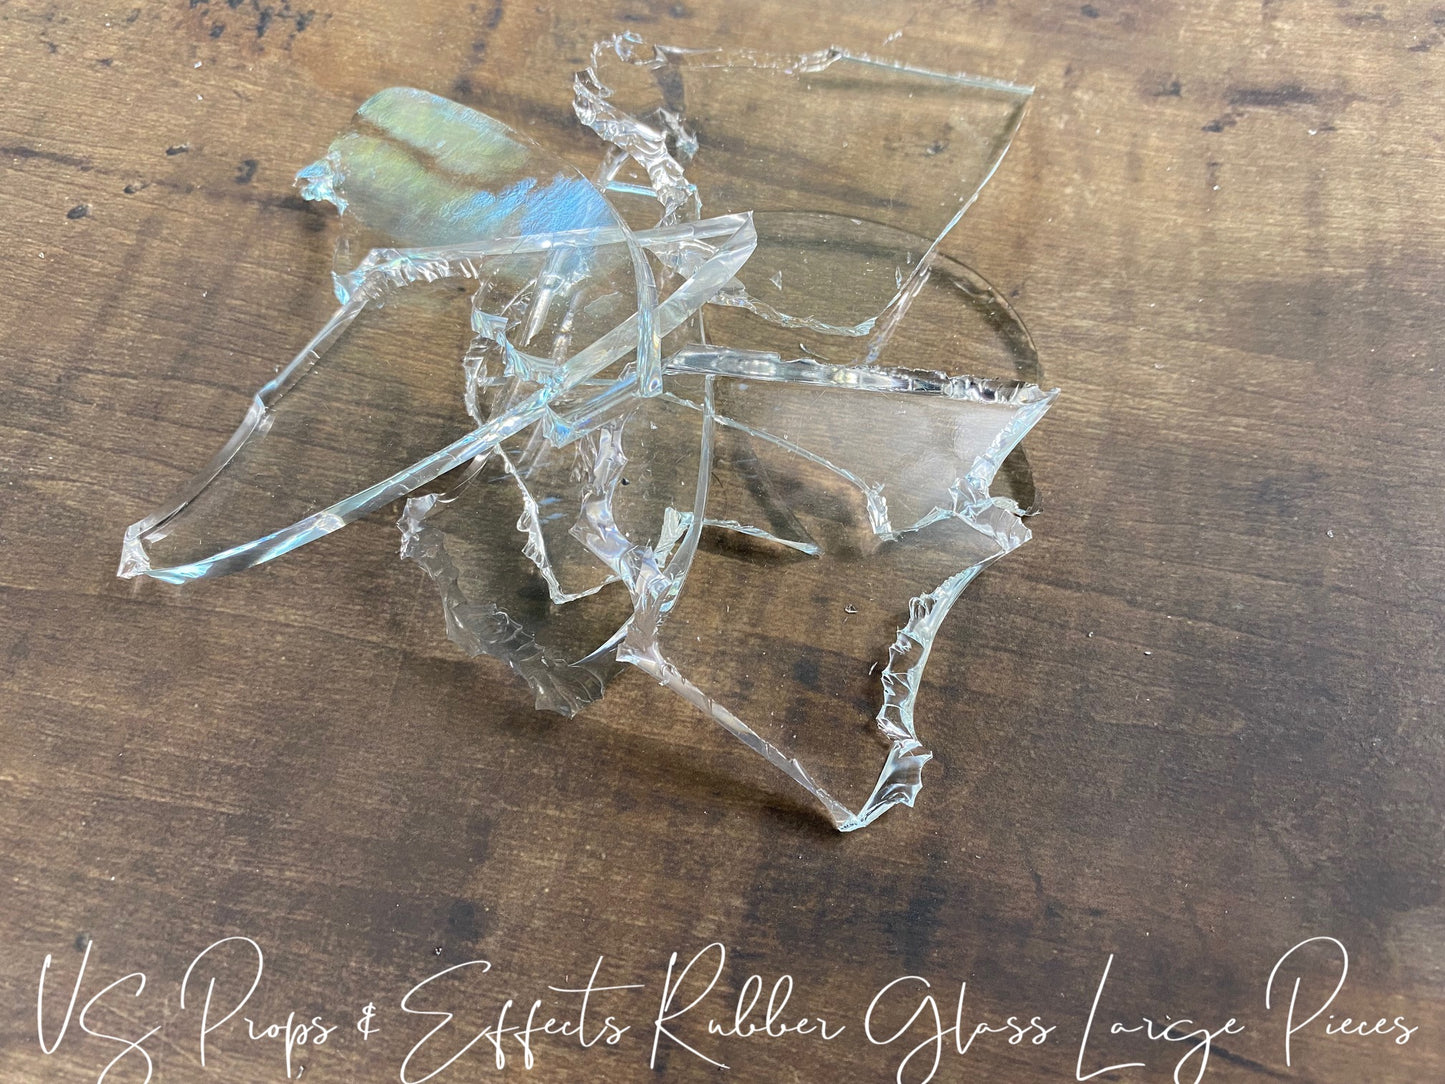 Rubber Glass LARGE Pieces- 1 LB